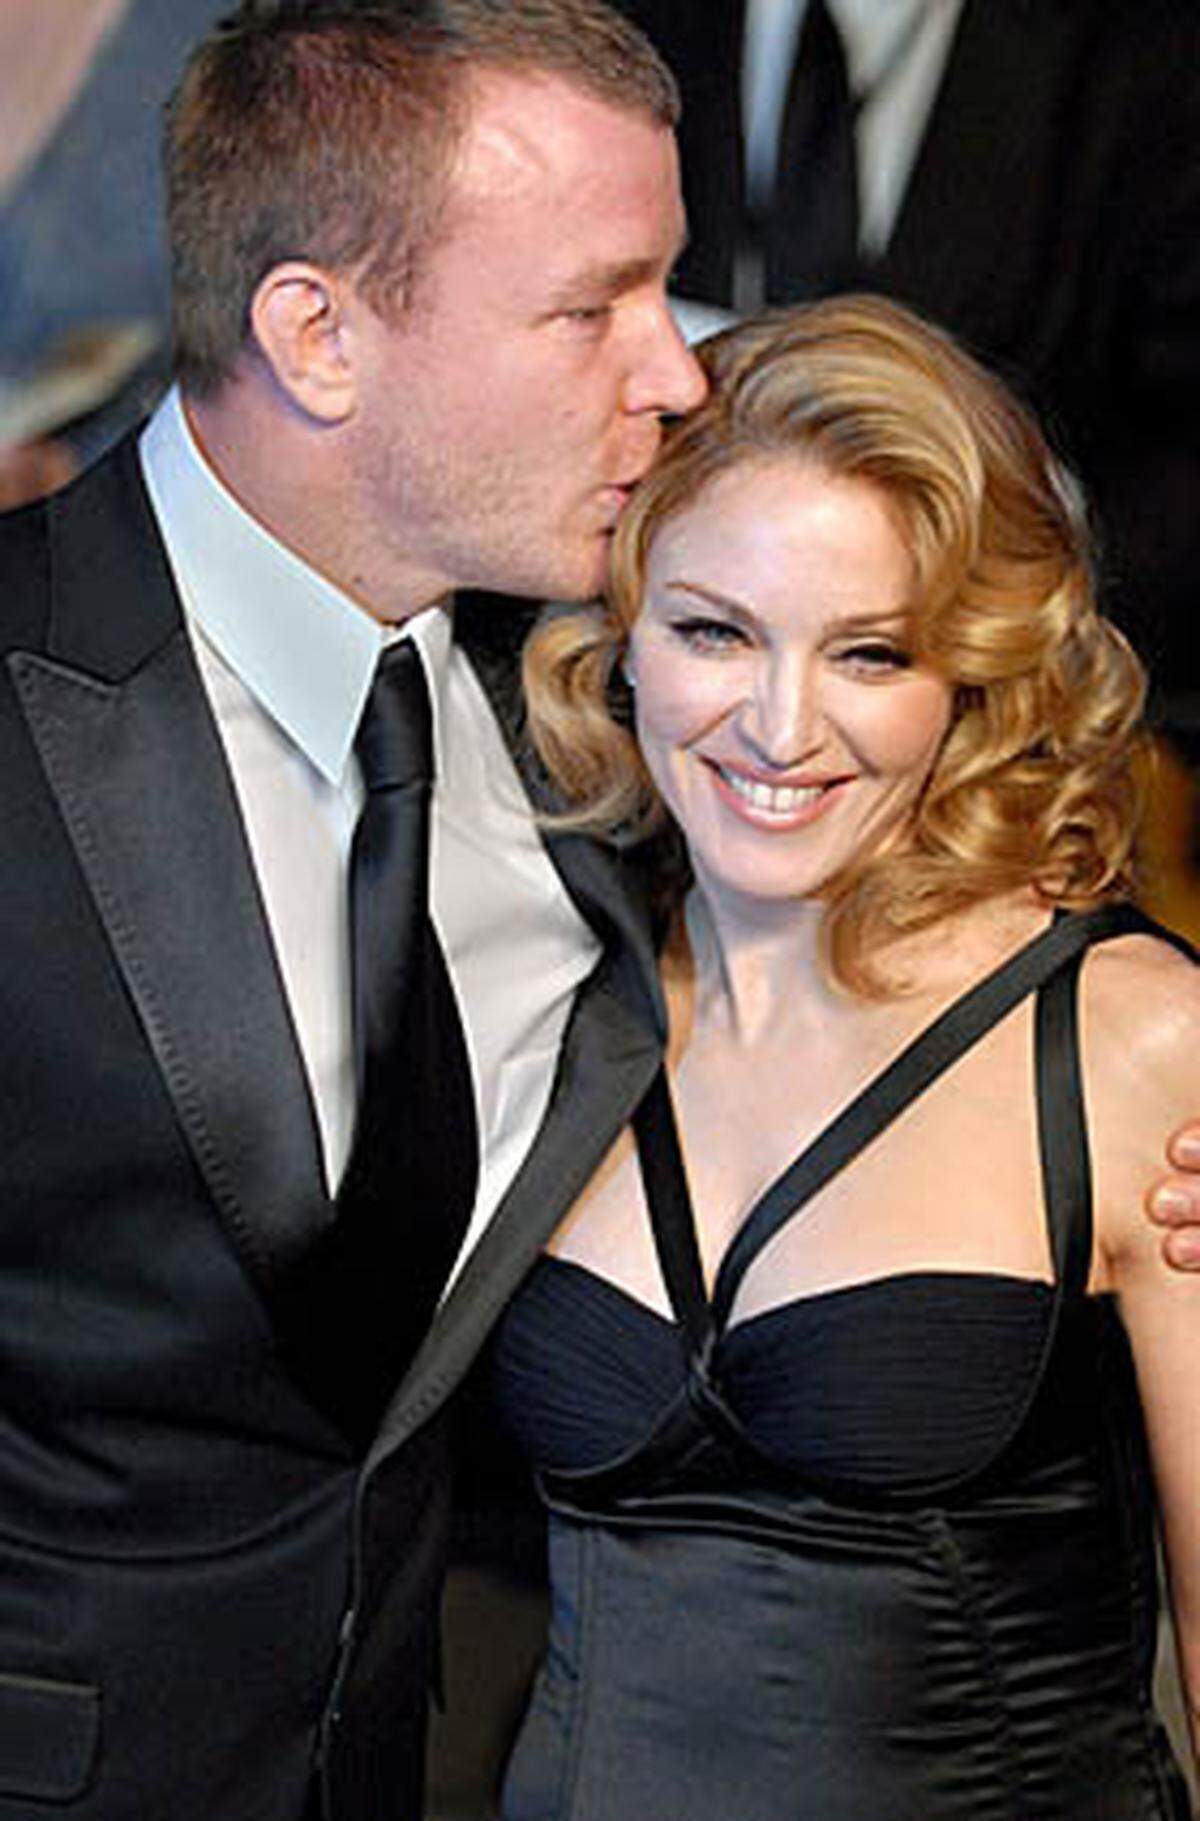 Bei einem Abendessen im Hause Sting in London lernte die Amerikanerin den britischen Regisseur Guy Ritchie kennen. Am 11. August brachte Madonna den gemeinsamen Sohn Rocco zur Welt, am 22. Dezember im selben Jahr traten Madonna und Ritchie vor den Traualter. Im Oktober 2008 gaben sie ihre Trennung bekannt.